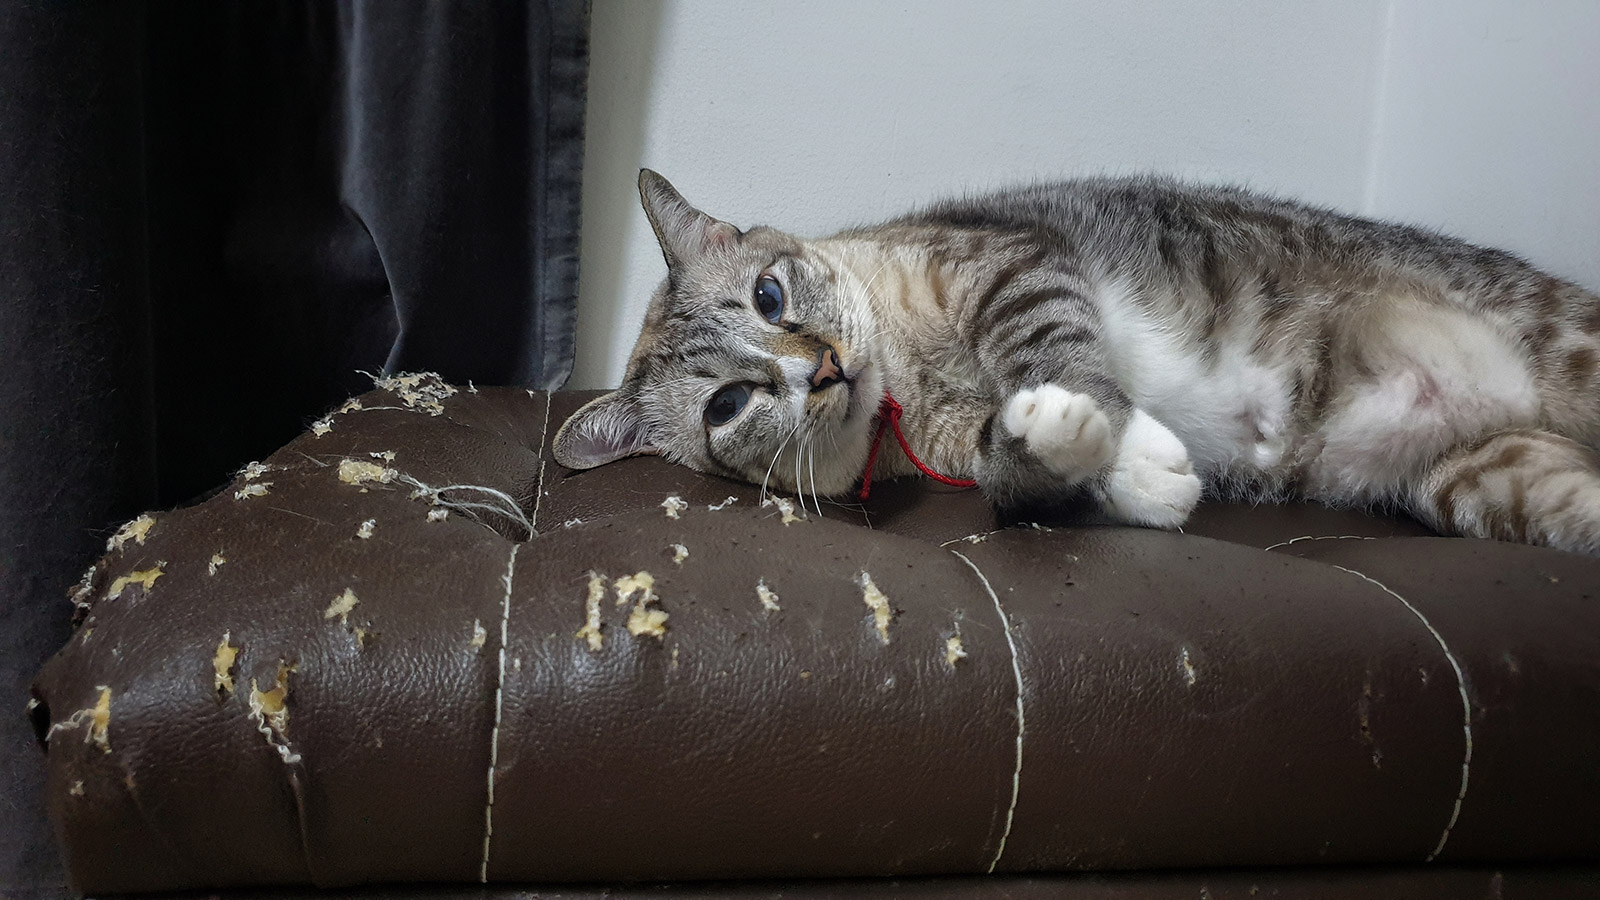 Как быстро отучить кошку драть обои и мебель. Простой способ | РБК Life